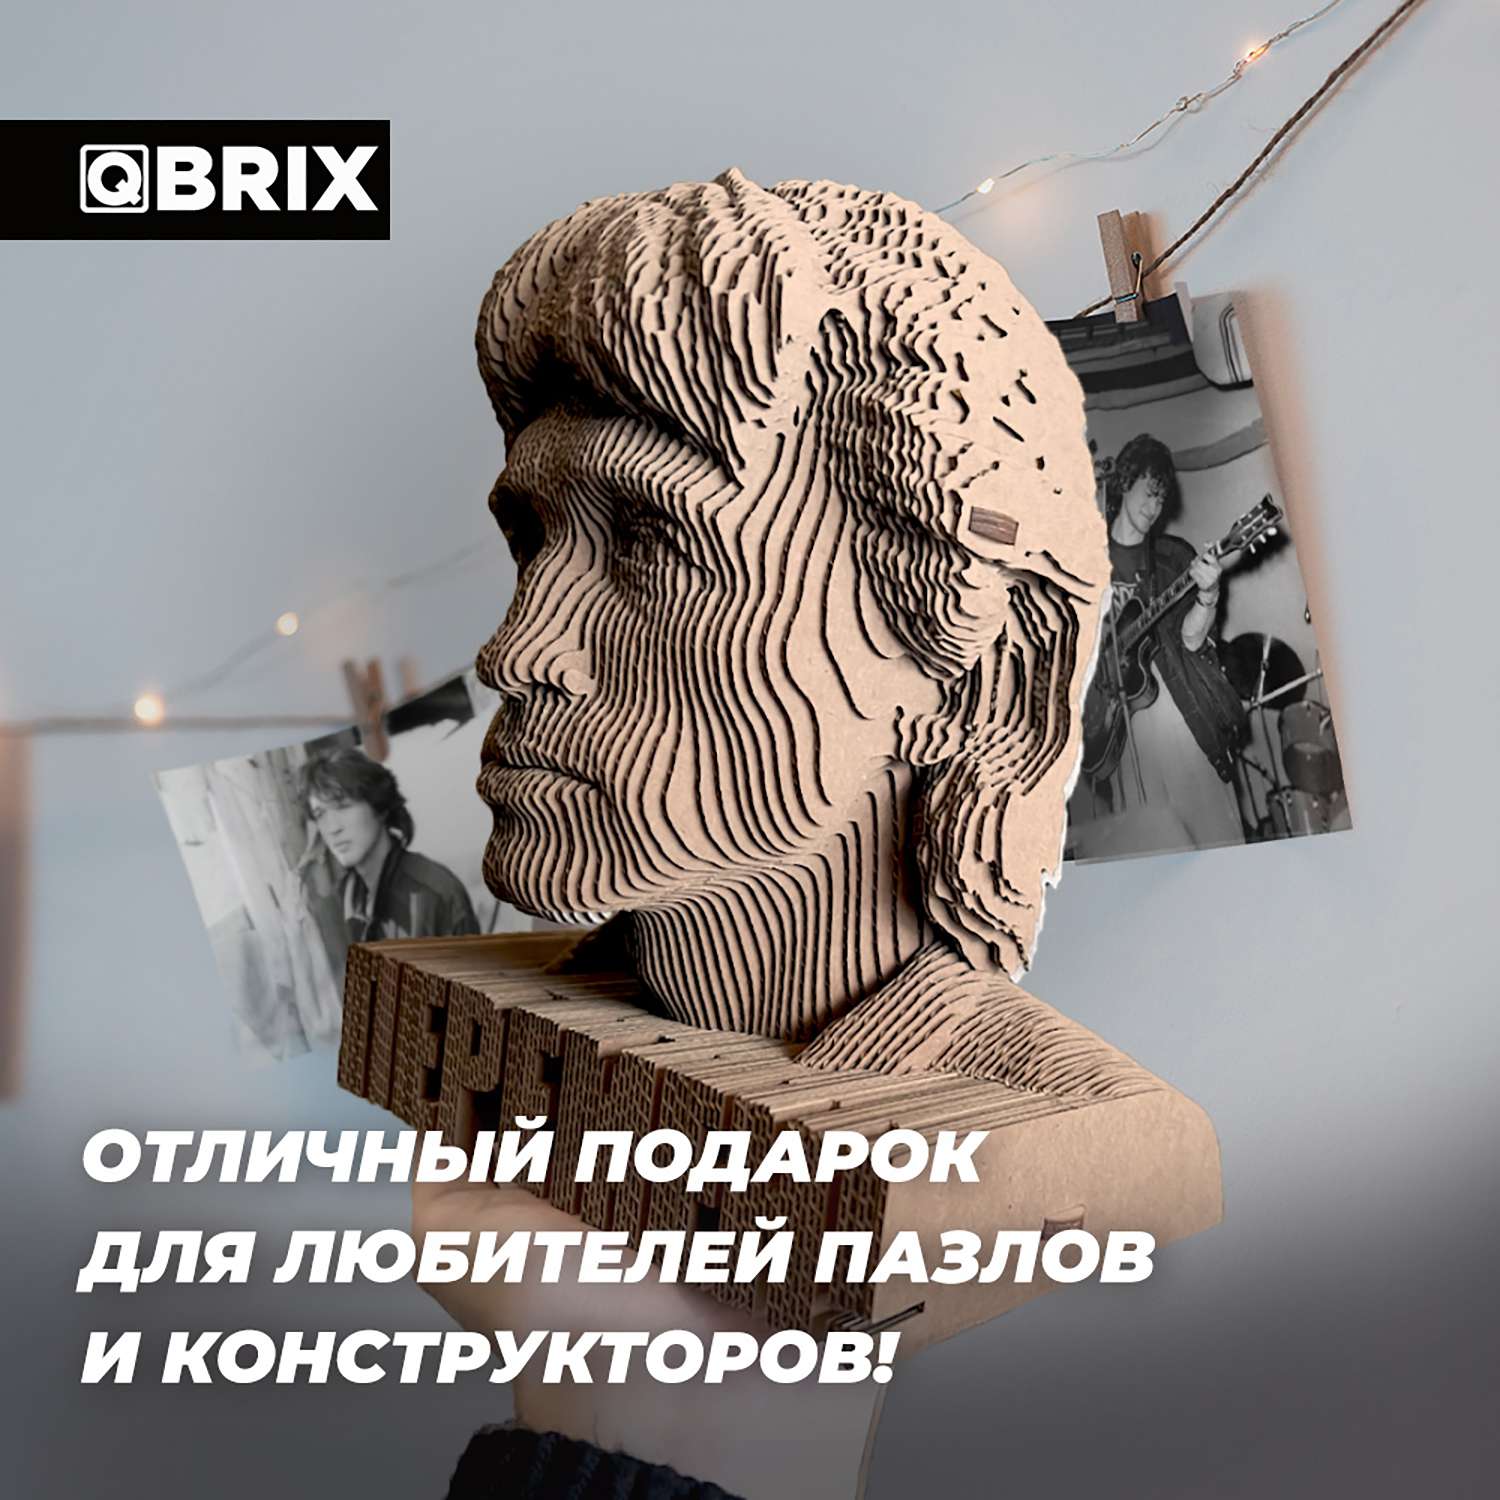 Конструктор QBRIX 3D картонный Виктор Цой 20016 20016 - фото 8